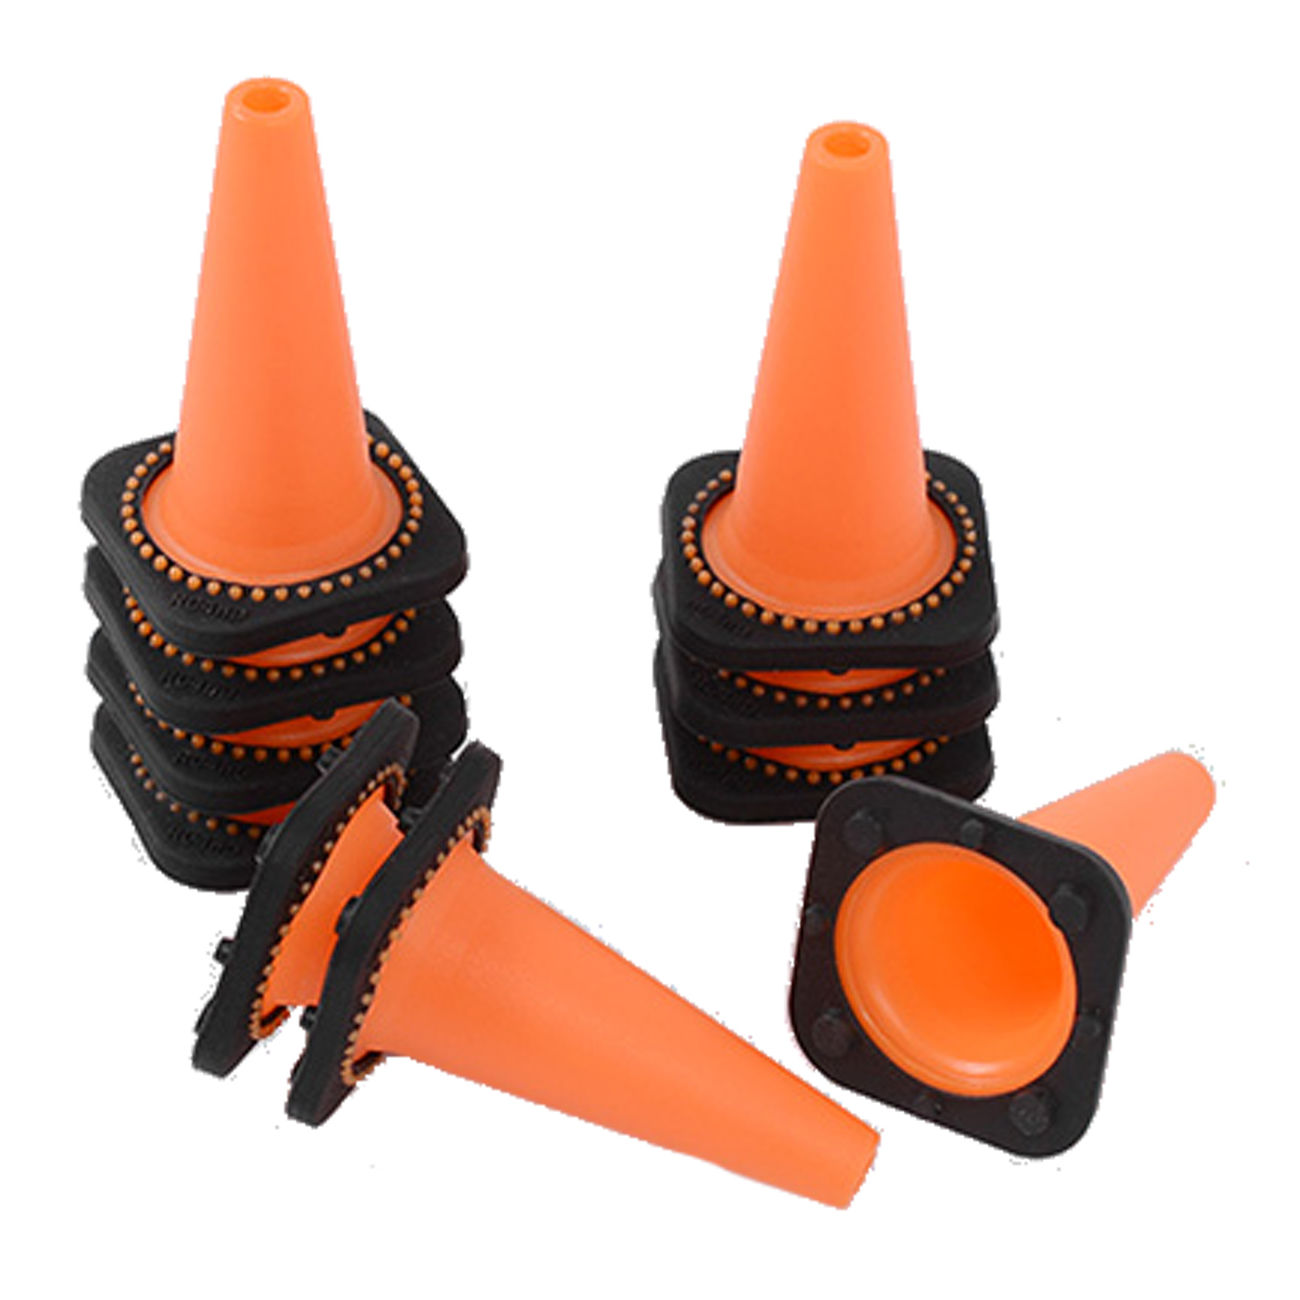 RC4WD 1:10 Verkehrs-Leitkegeln Pylon Set (10 Stück) orange / schwarz Z-S1658 Bild 2